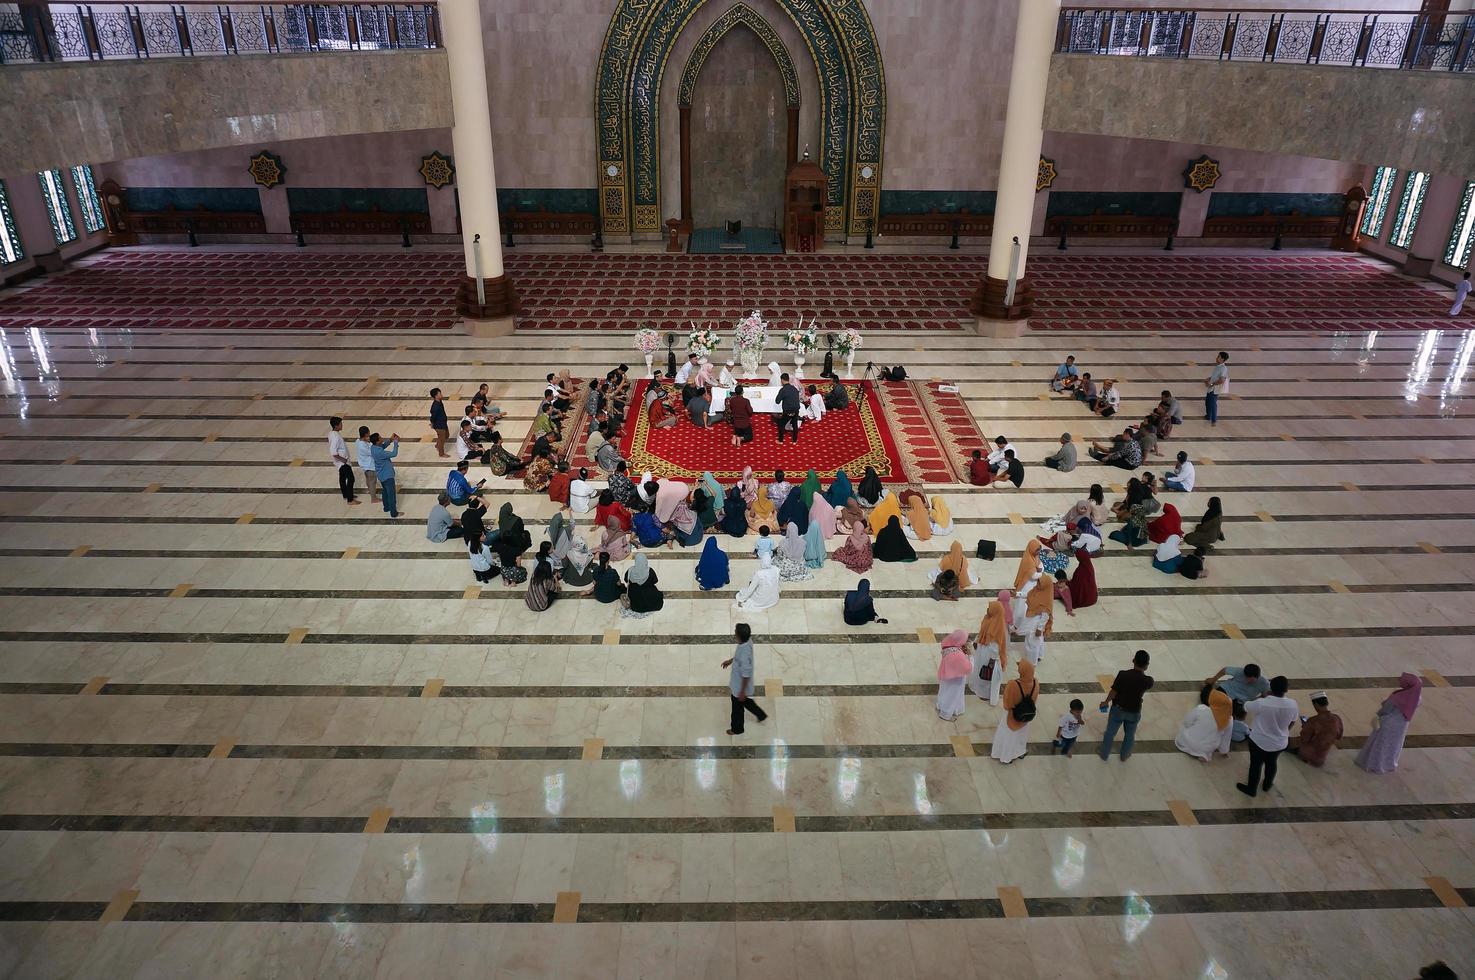 sangatta, ostkalimantan, indonesien, 2020 - islamischer ehevertrag in der al faruq moschee. Ein islamischer Ehevertrag ist ein islamischer Ehevertrag. foto